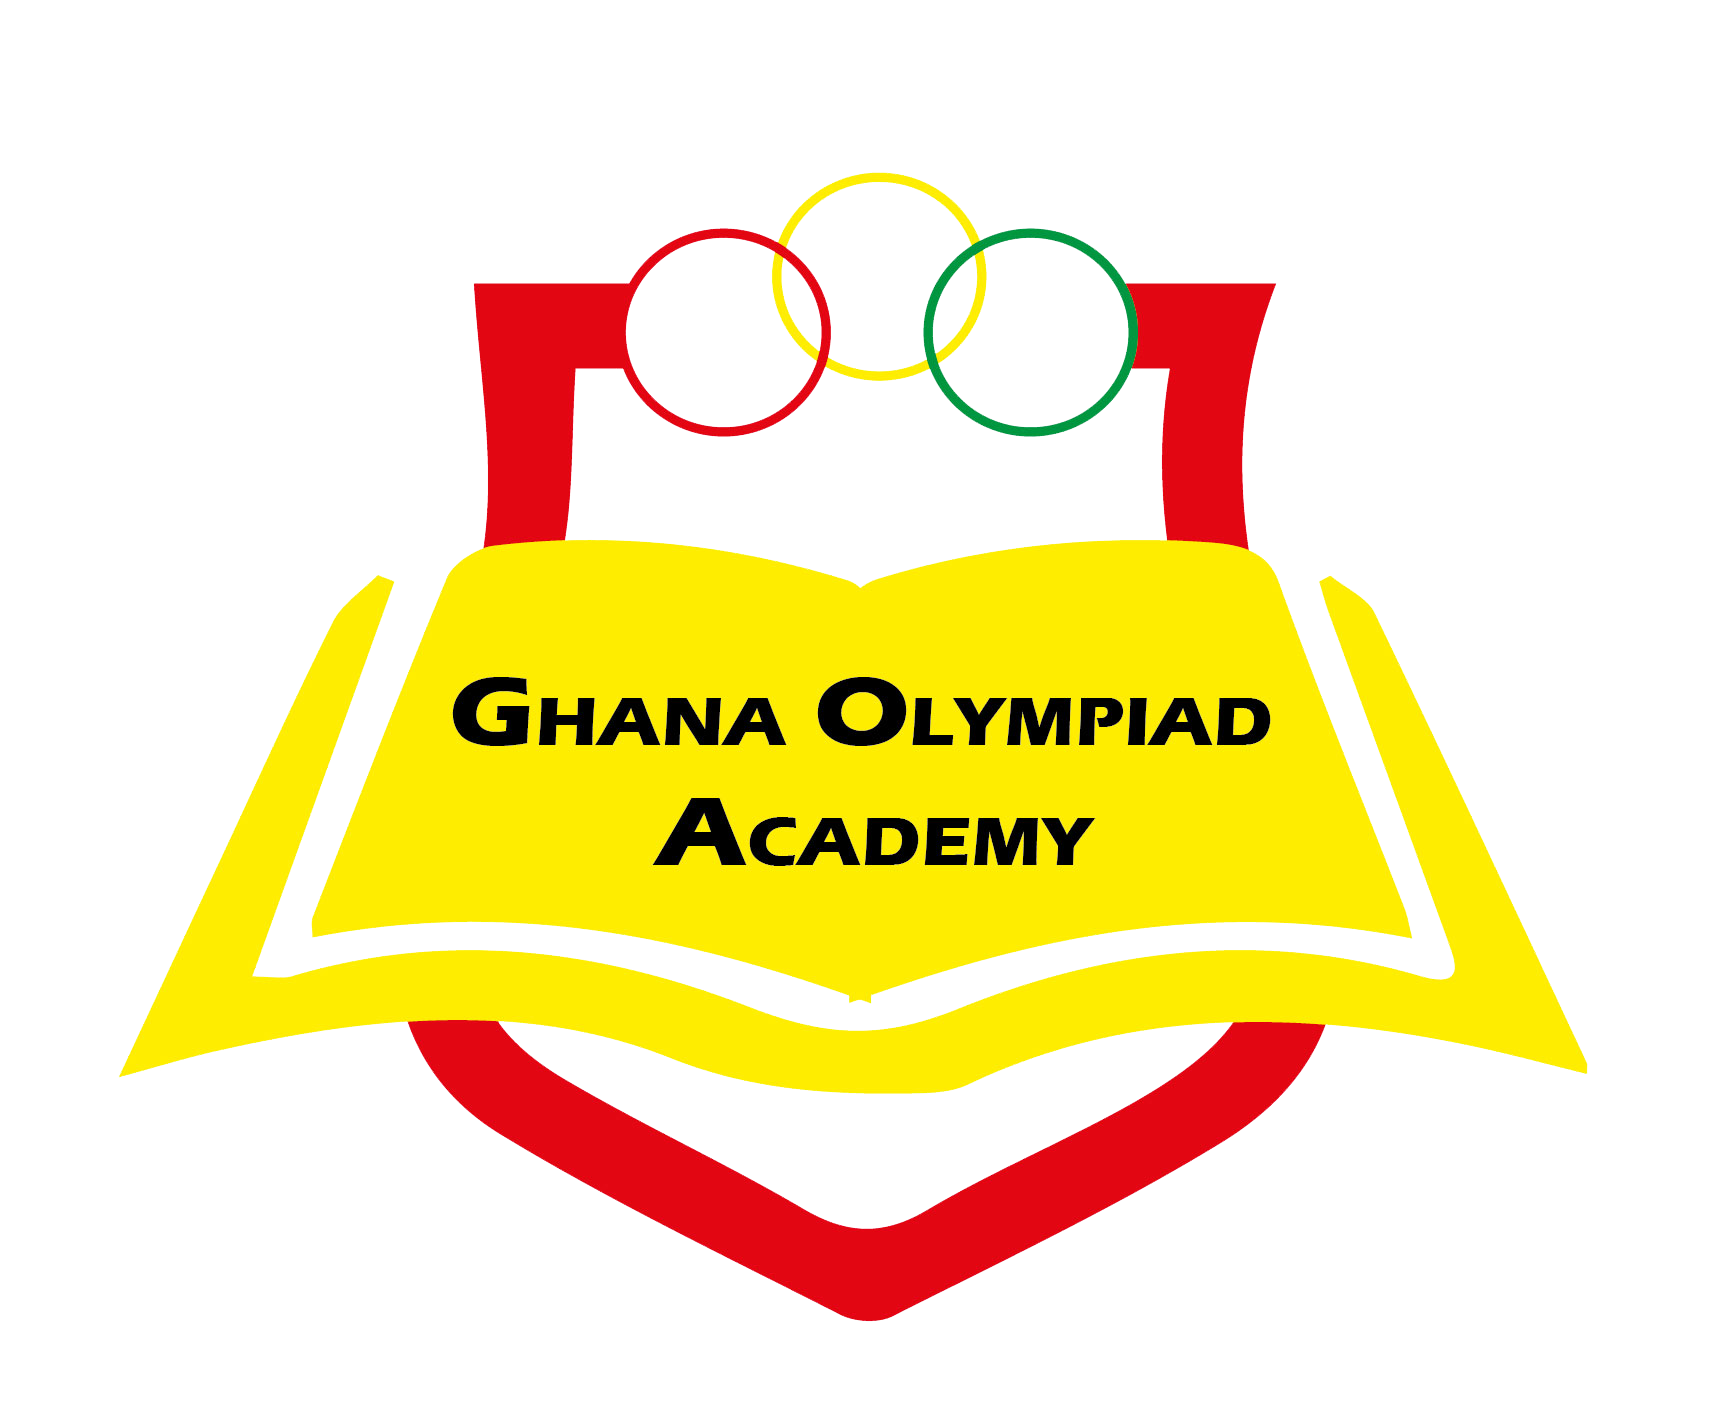 Ghana Olympiad Academy